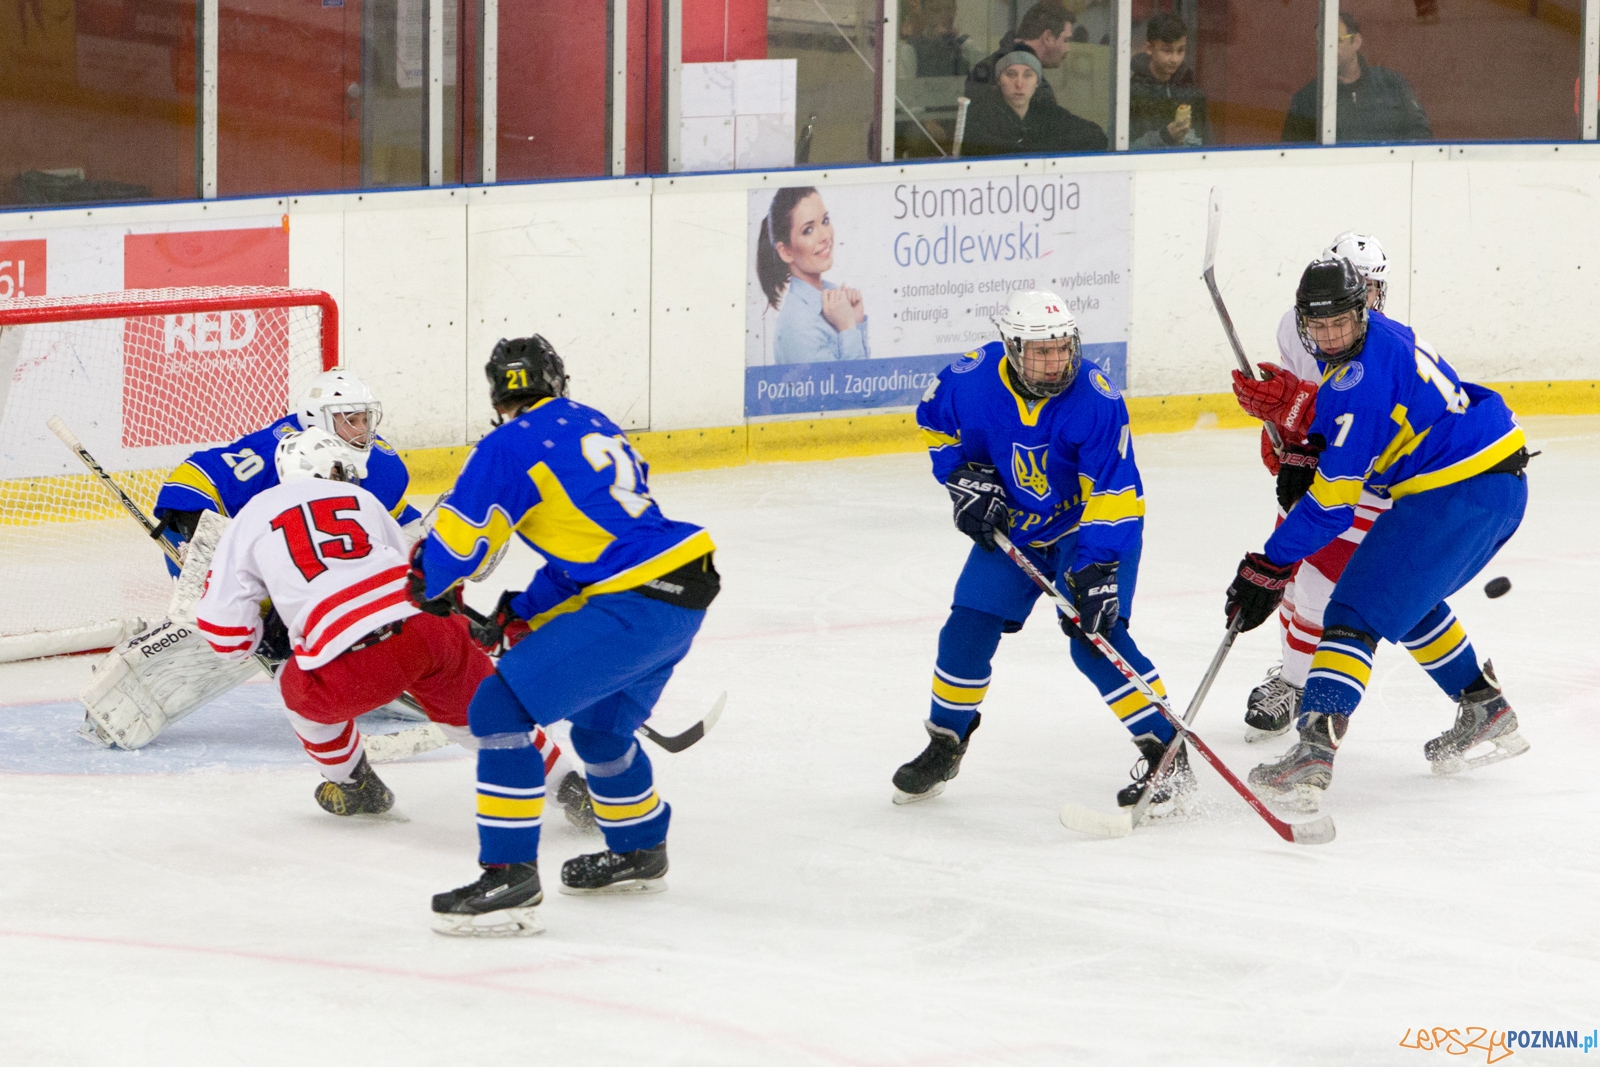 Międzynarodowy turniej hokeja na lodzie U18 (Polska - Ukraina)  Foto: lepszyPOZNAN.pl / Piotr Rychter